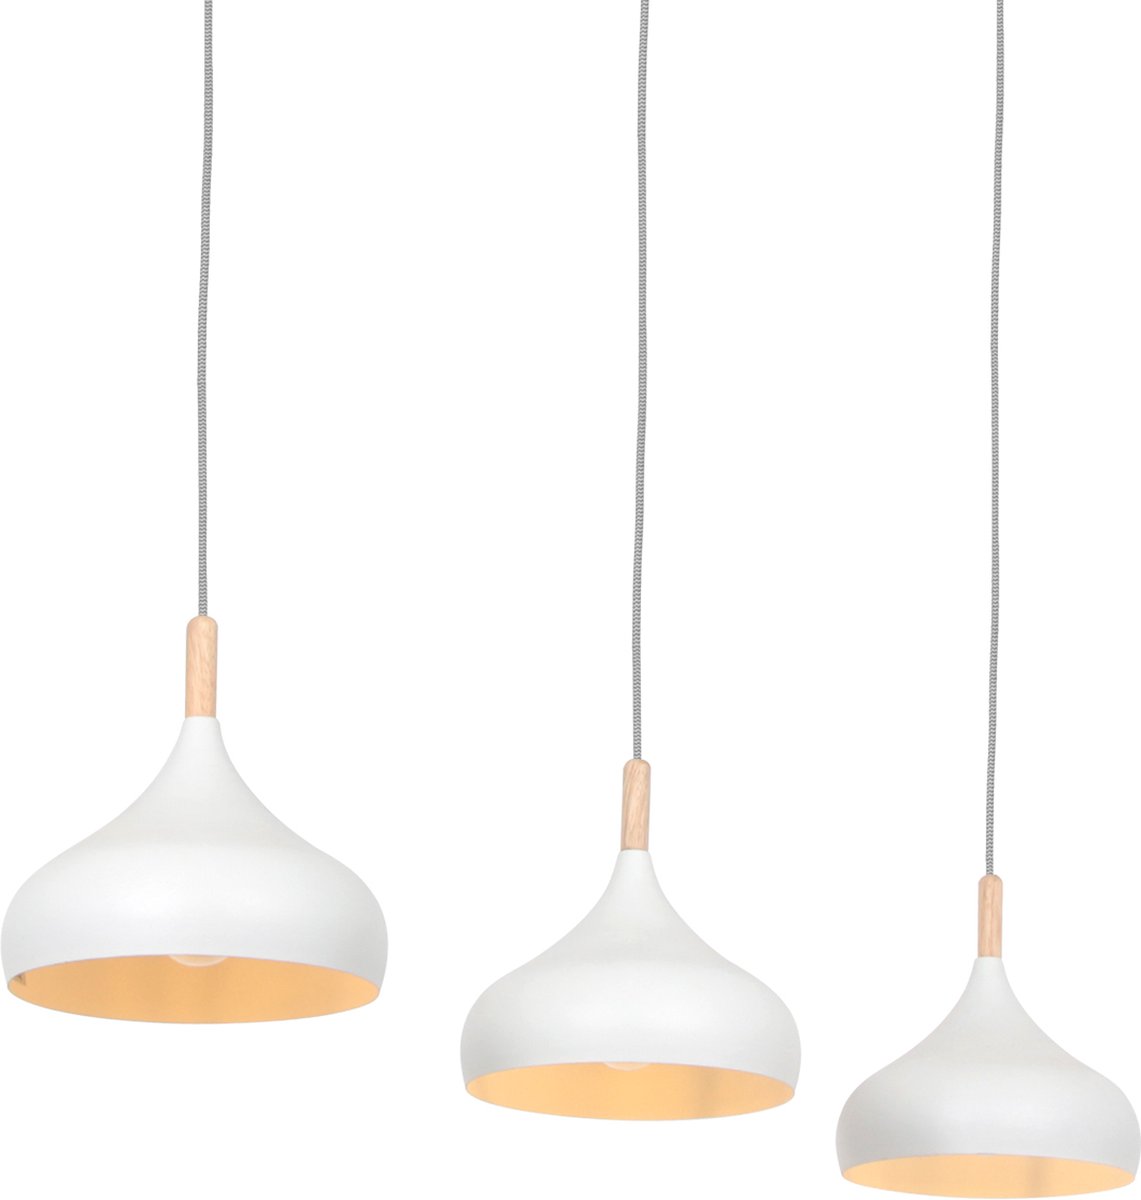 Scandinavische hanglamp Bjorr | 3 lichts | wit / bruin | hout / metaal | in hoogte verstelbaar tot 180 cm | eetkamer / eettafel | modern / landelijk / sfeervol design